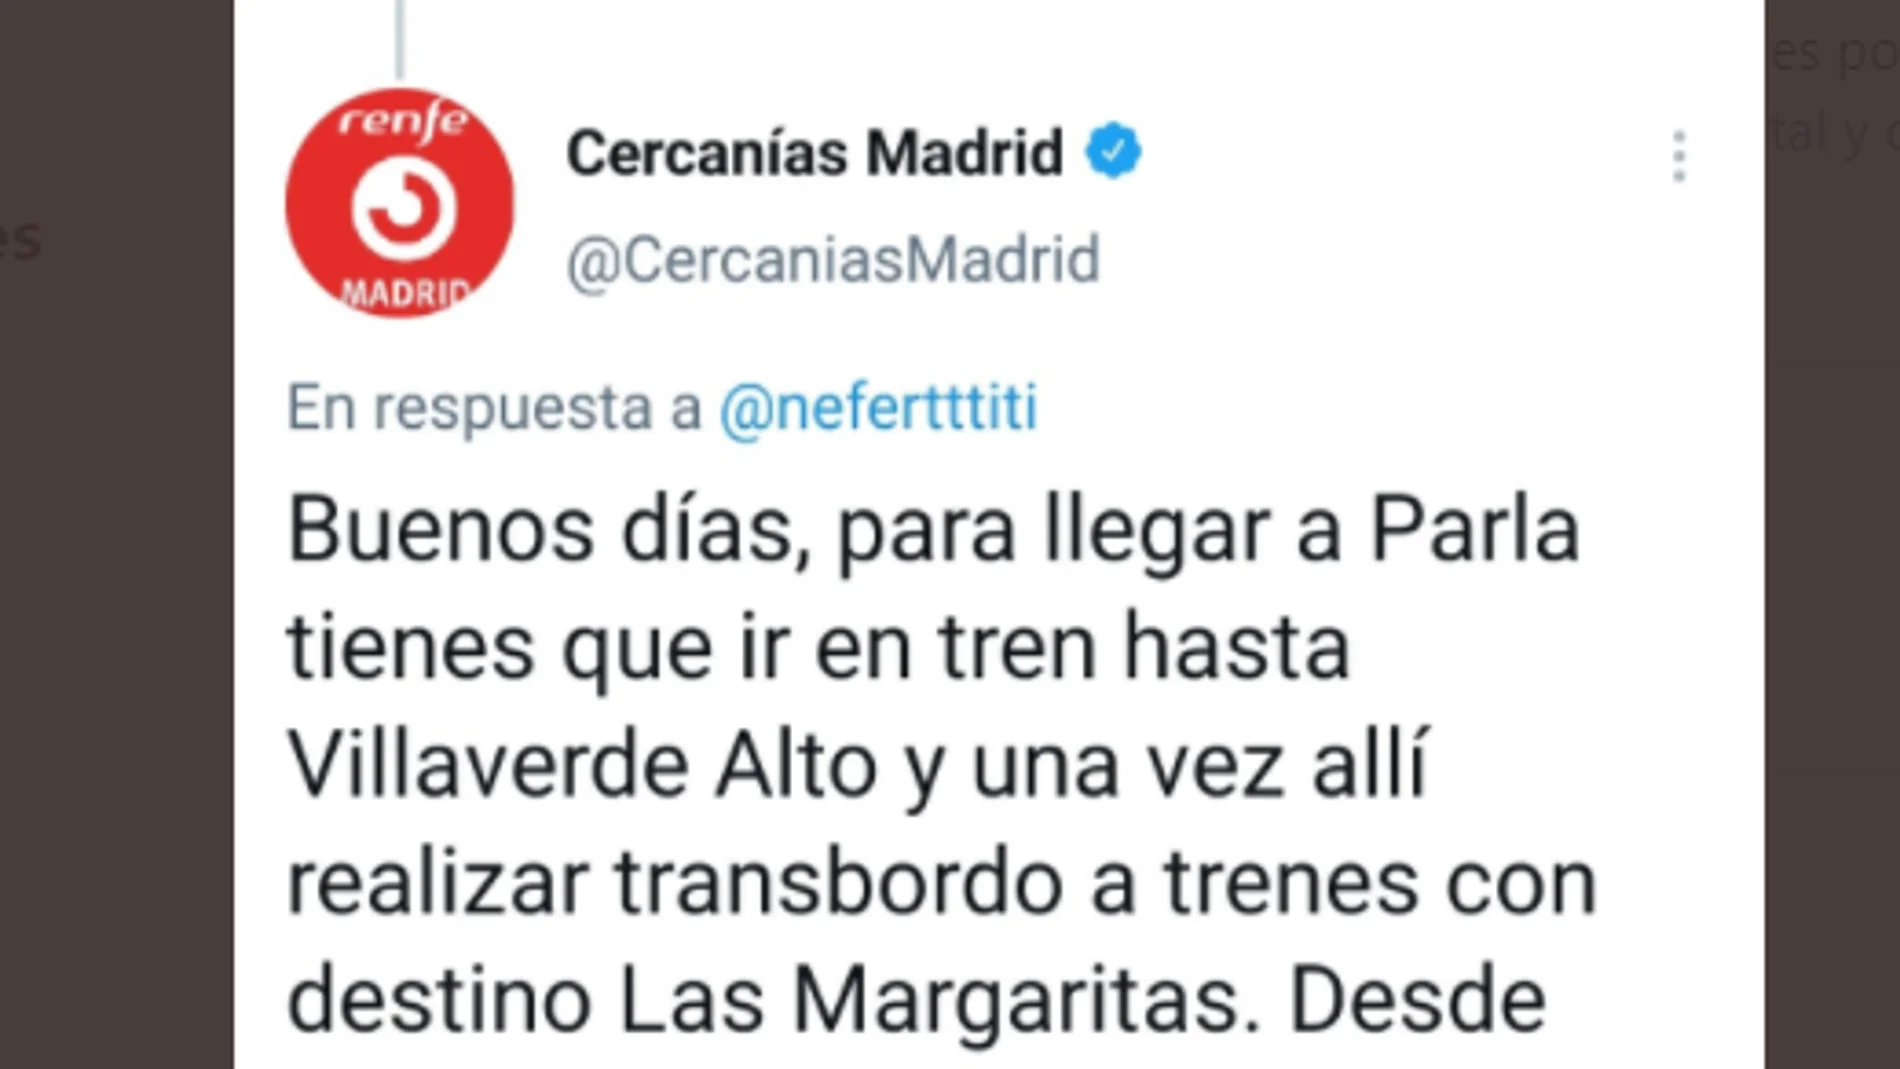 La respuesta de Cercanías Madrid en Twitter sobre cómo ir a Parla desata los memes